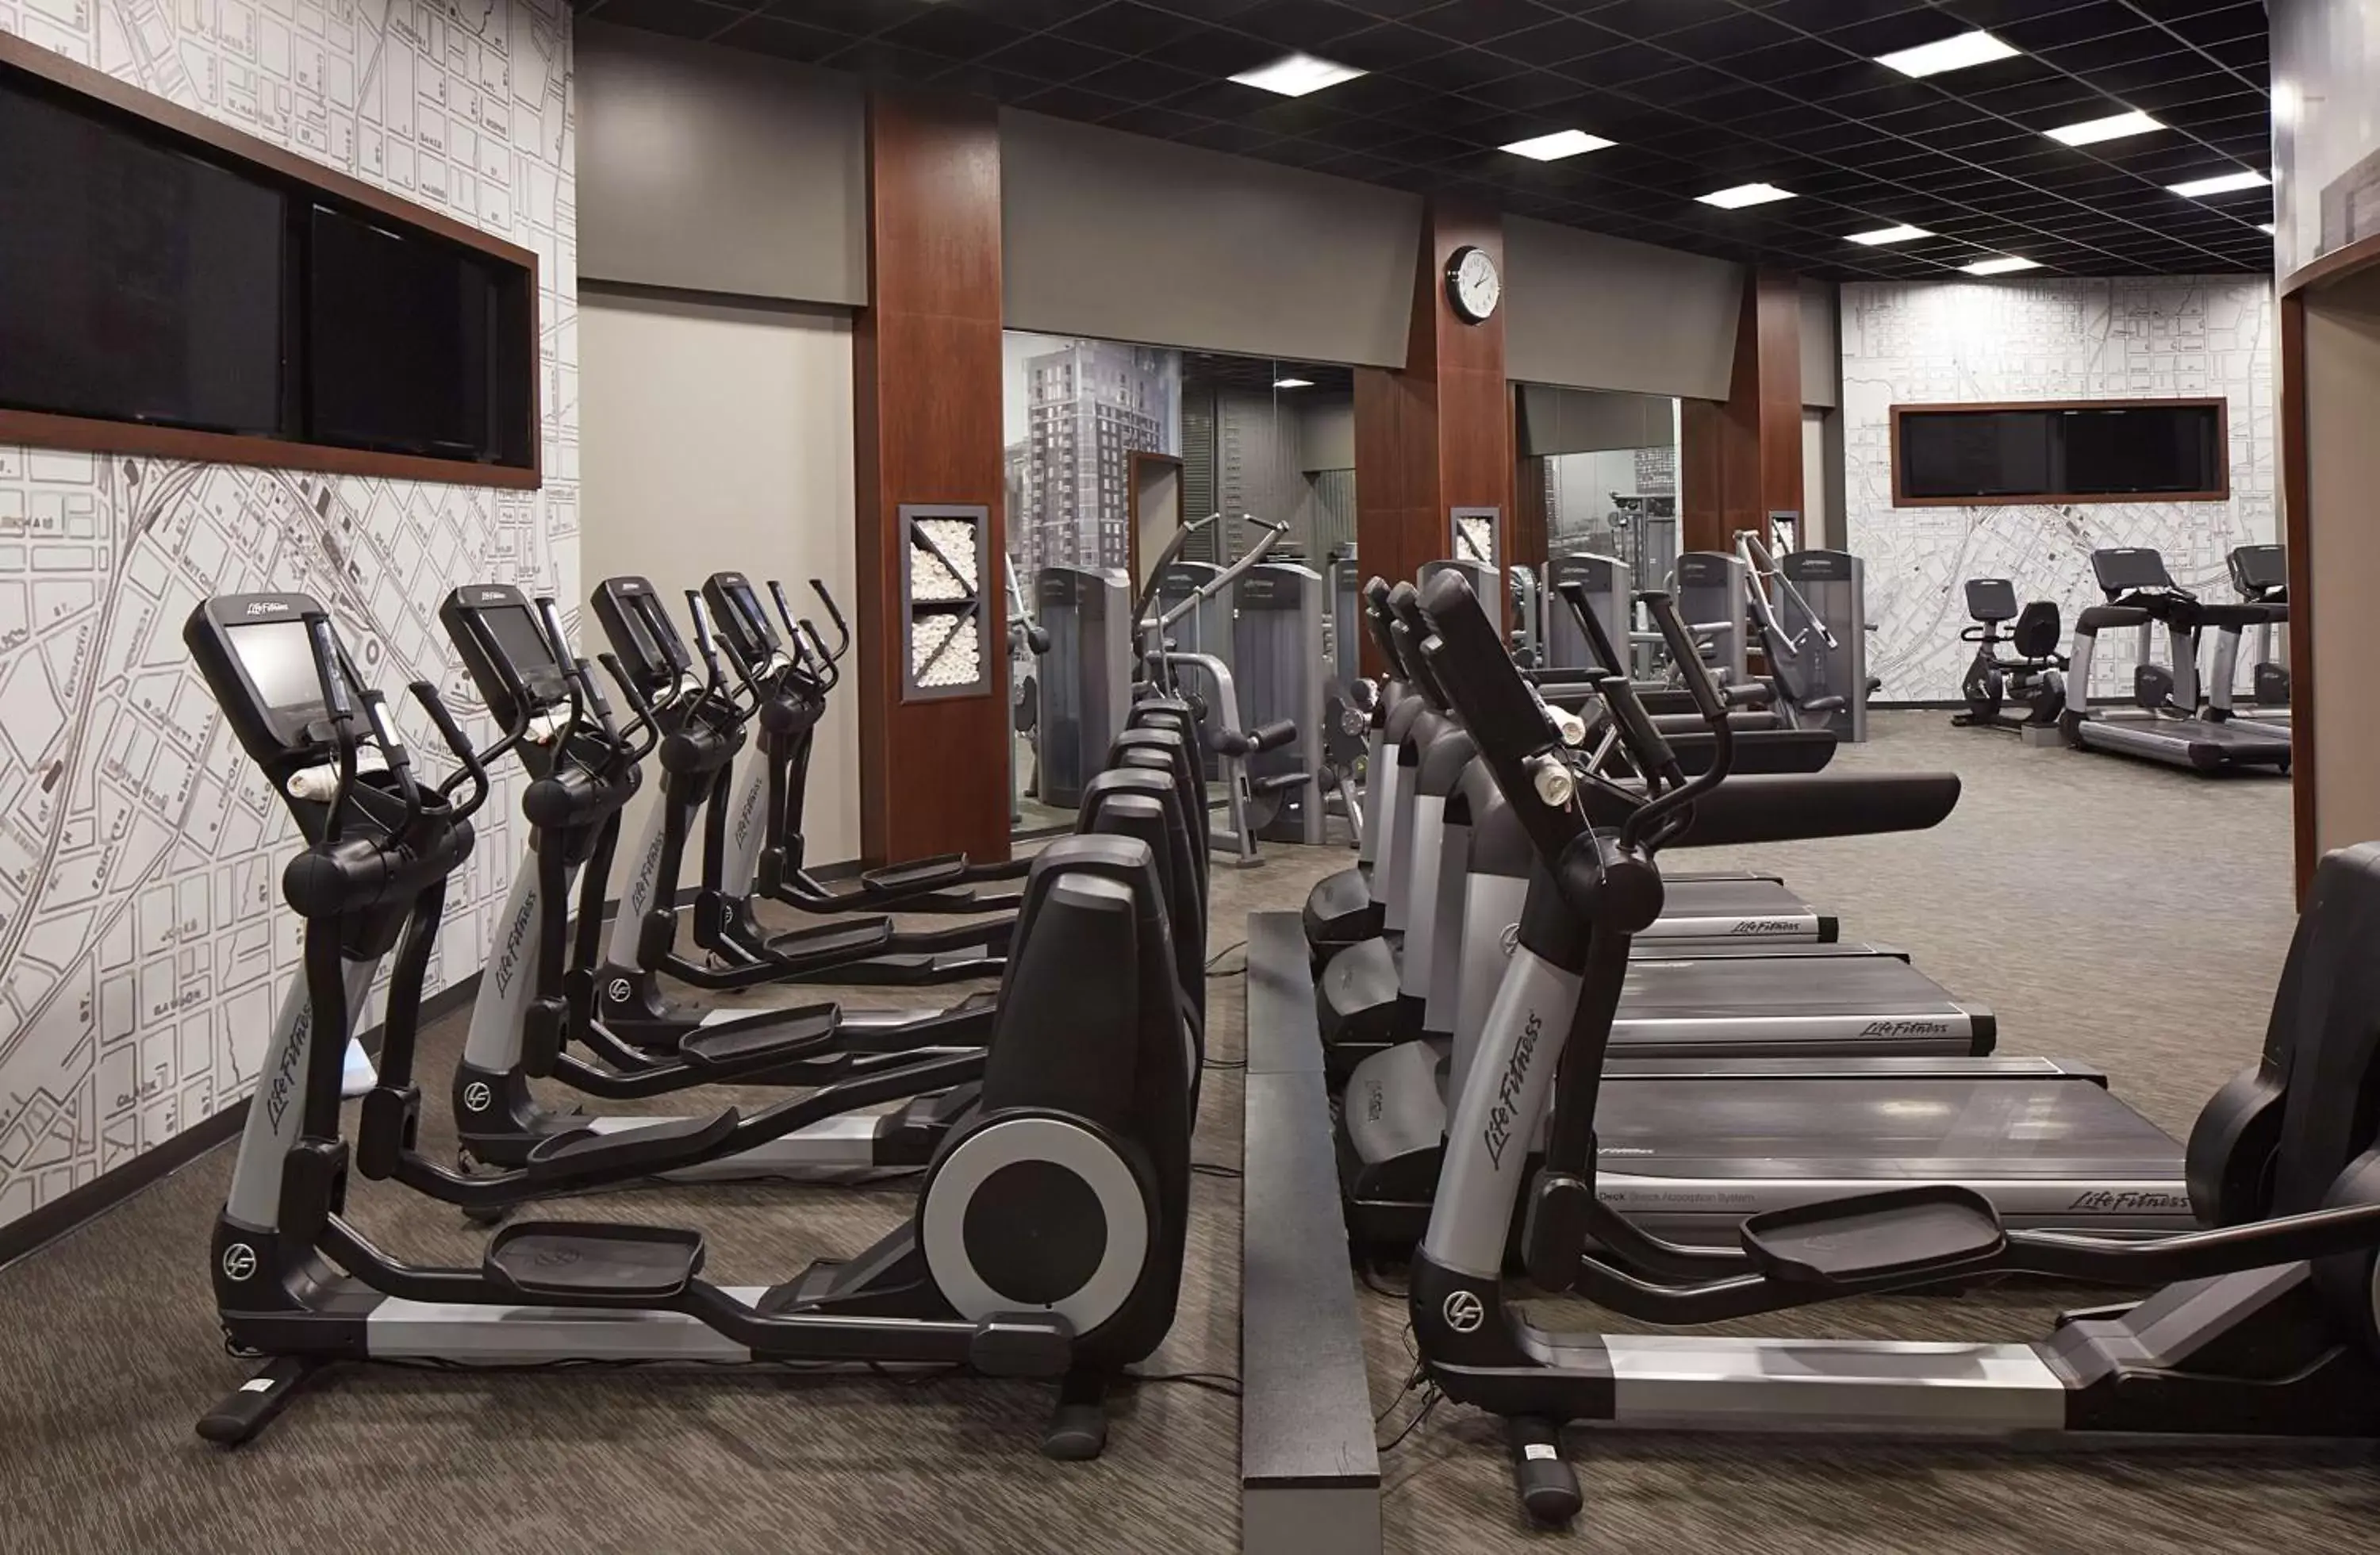 Fitness centre/facilities, Fitness Center/Facilities in Hyatt Regency Atlanta